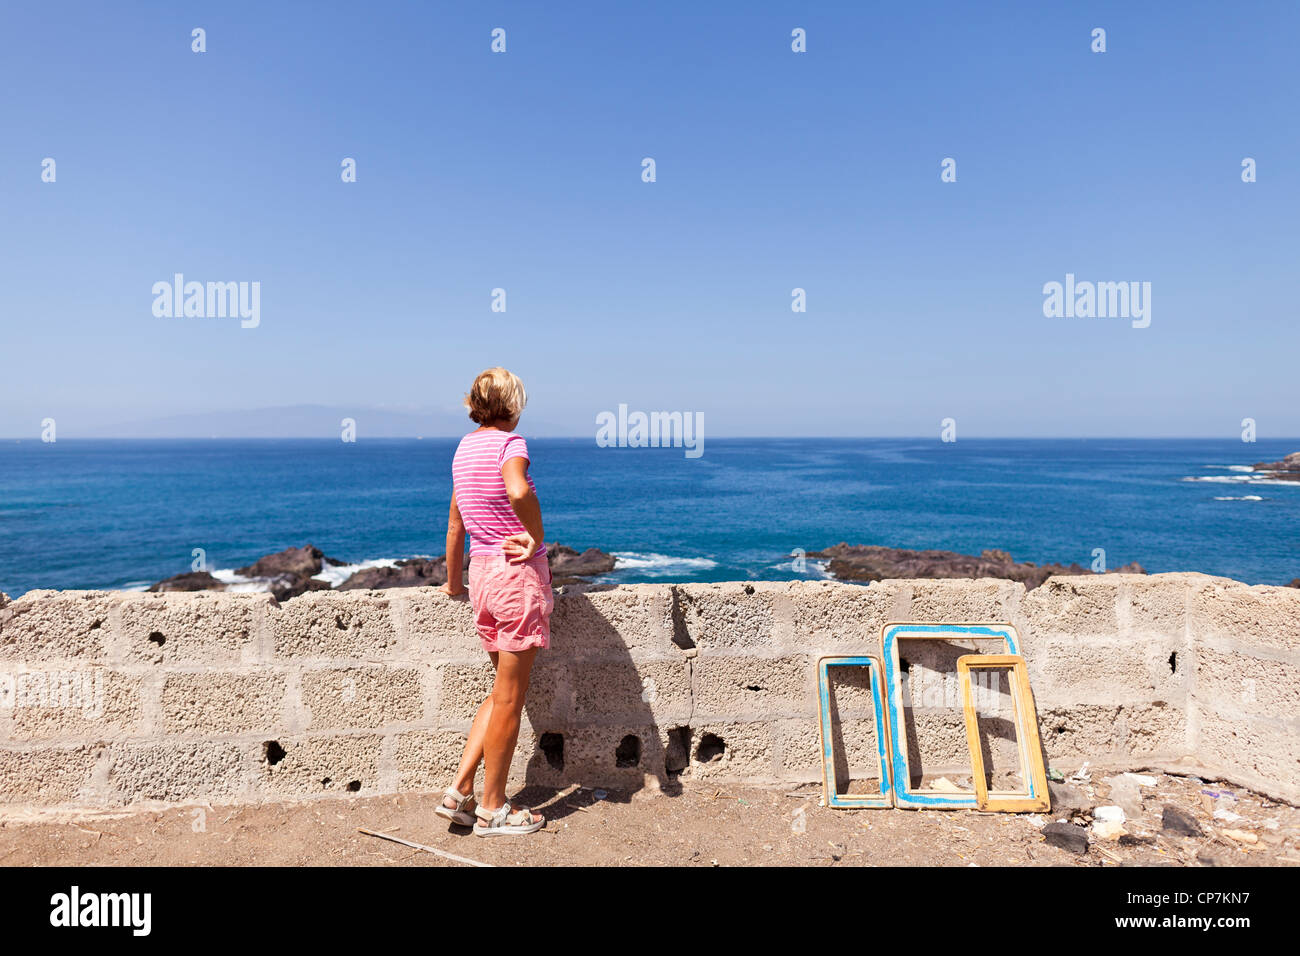 La donna in rosa di t-shirt e pantaloncini corti che guarda al mare con il cielo limpido da Tenerife, La Gomera all'orizzonte, Isole Canarie Foto Stock